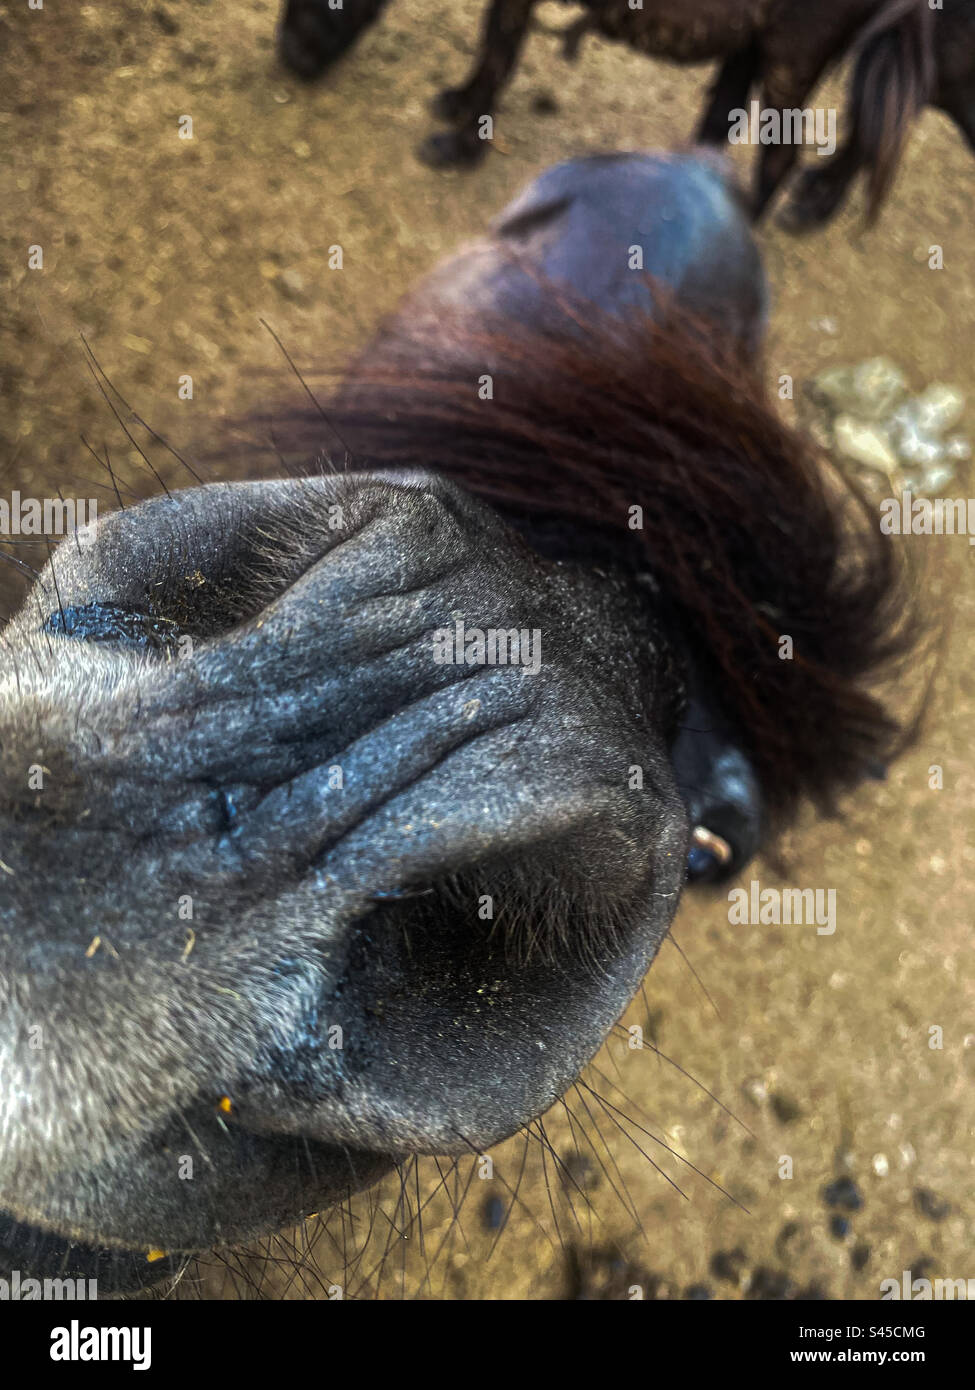 las fosas nasales de un caballo Foto de stock